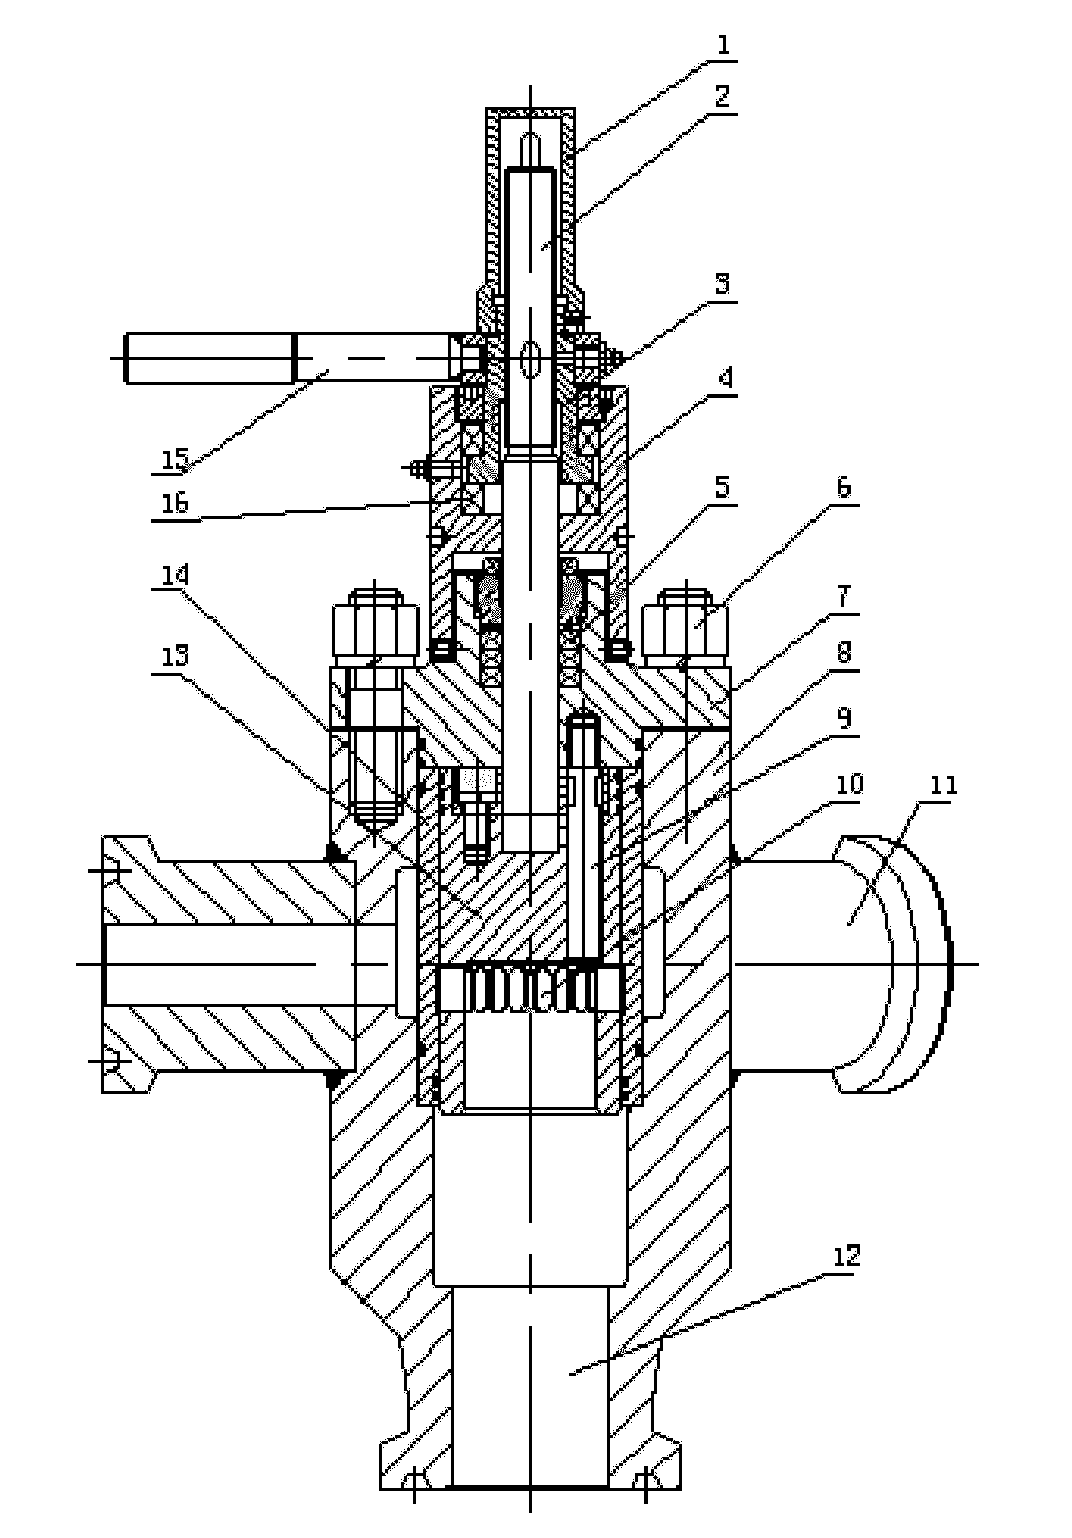 Adjustable high-pressure multiport distributing valve